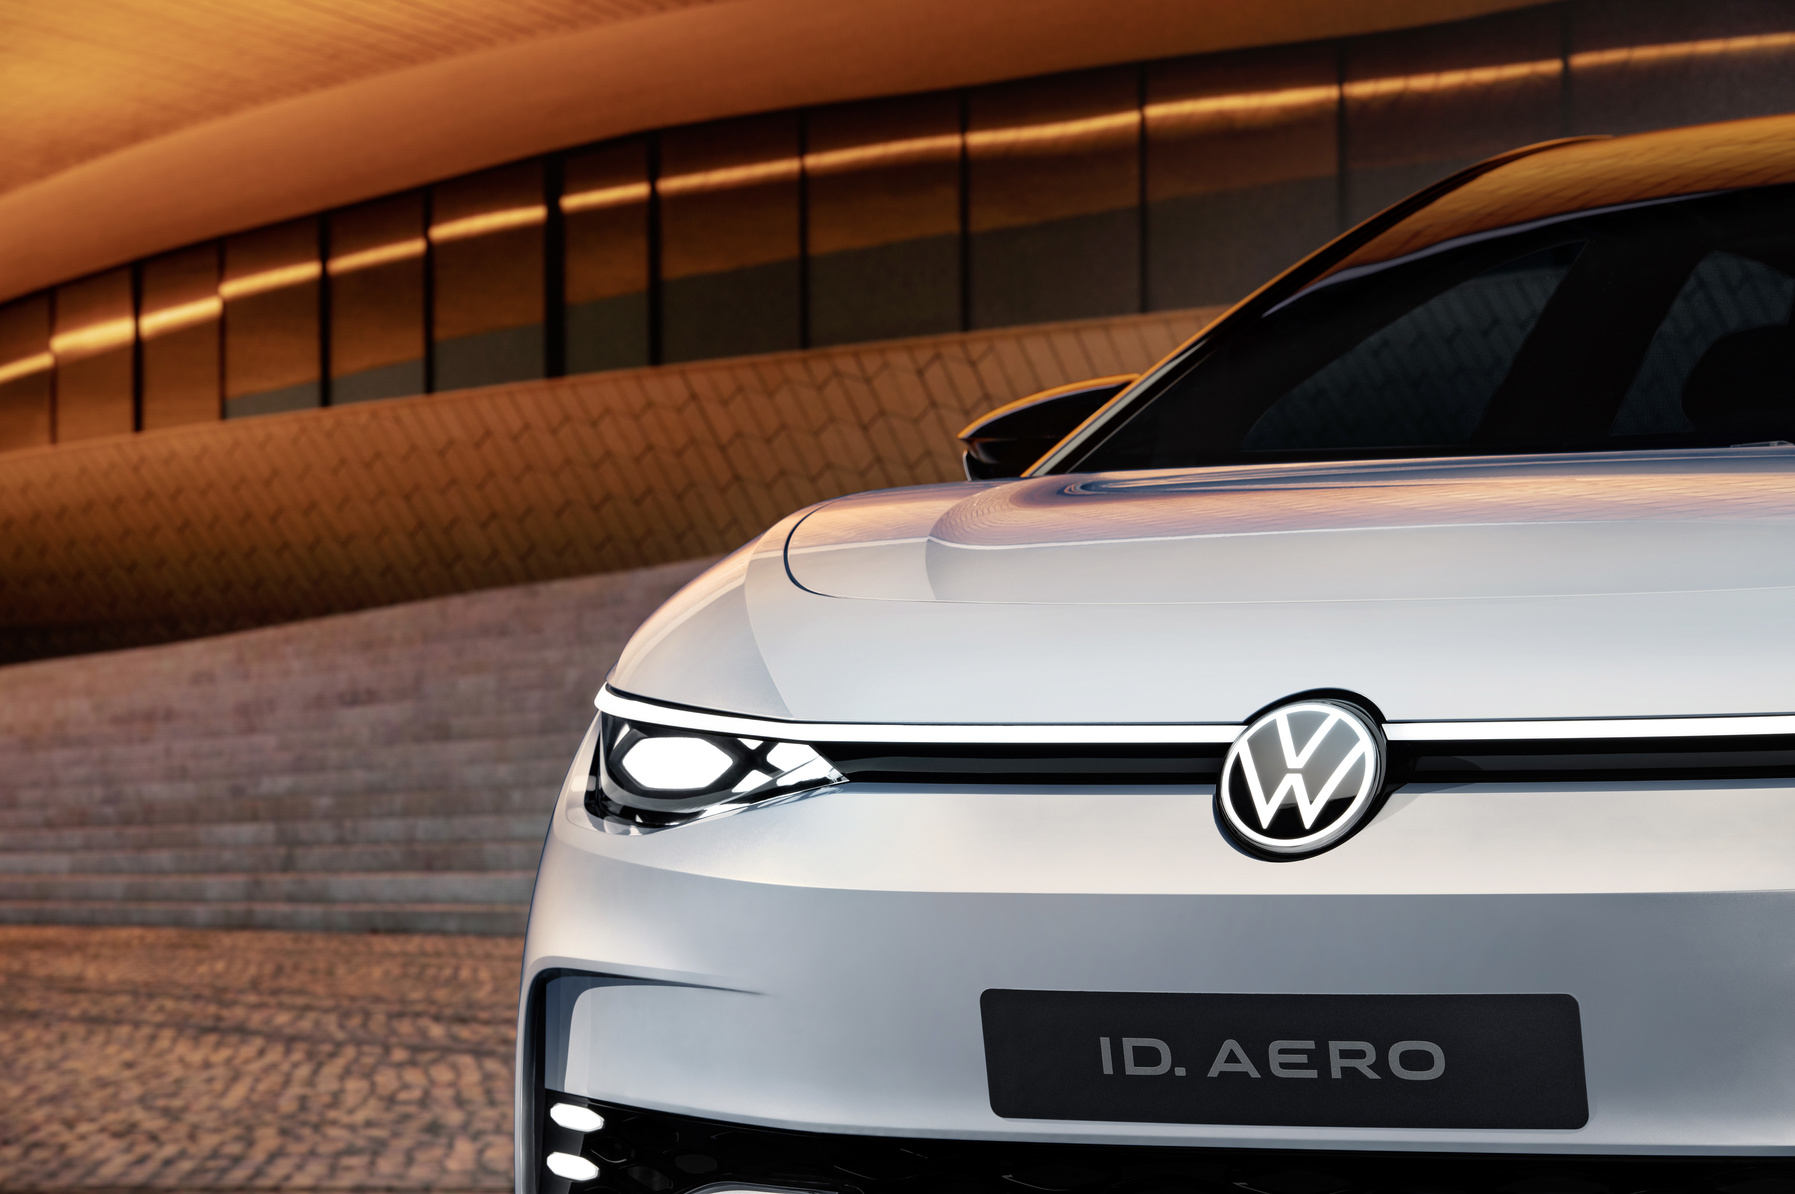 2022 Volkswagen ID.AERO concept BEV